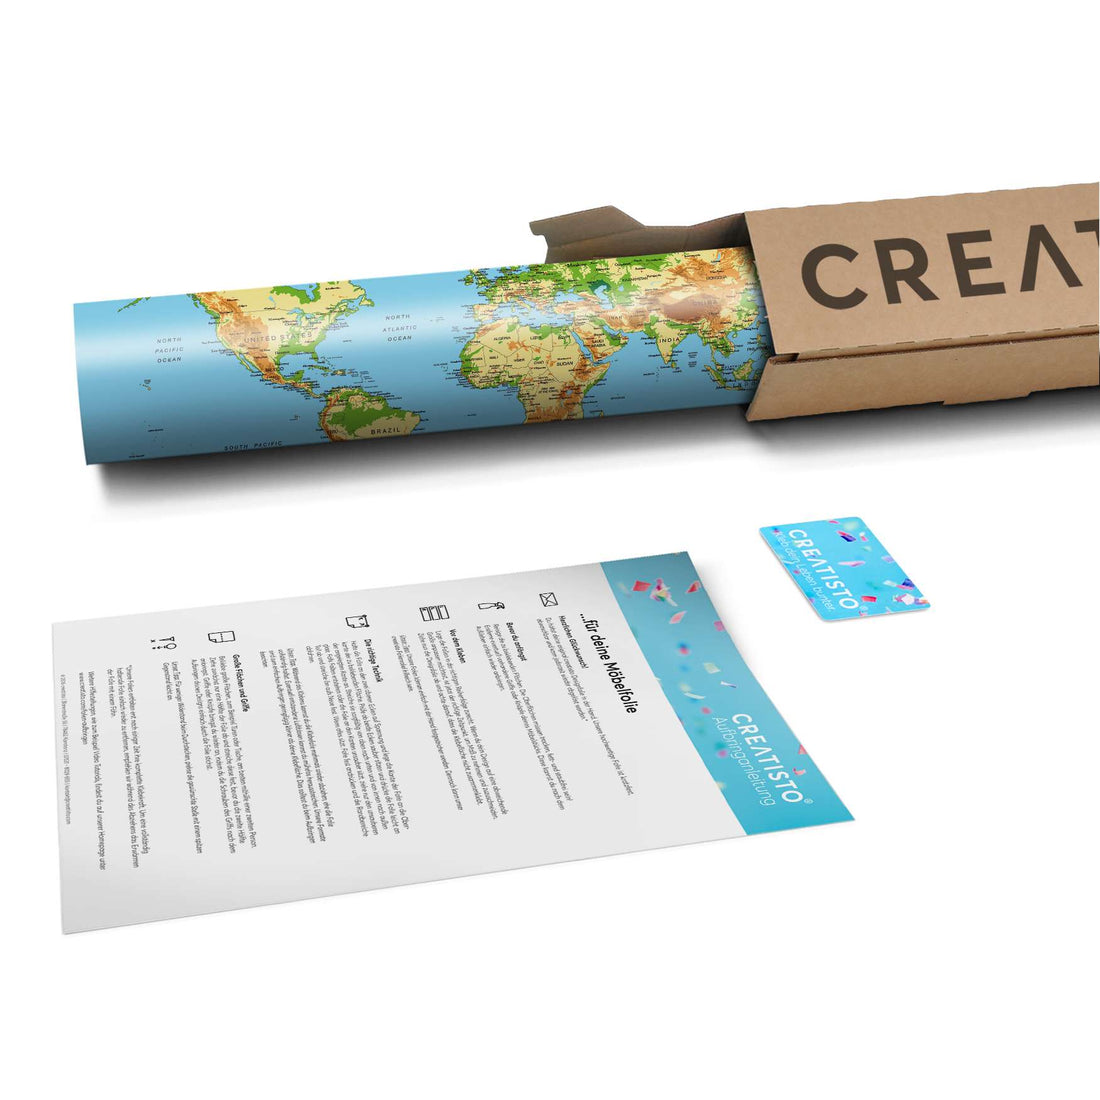 Klebefolie Geografische Weltkarte - Paket - creatisto pds2